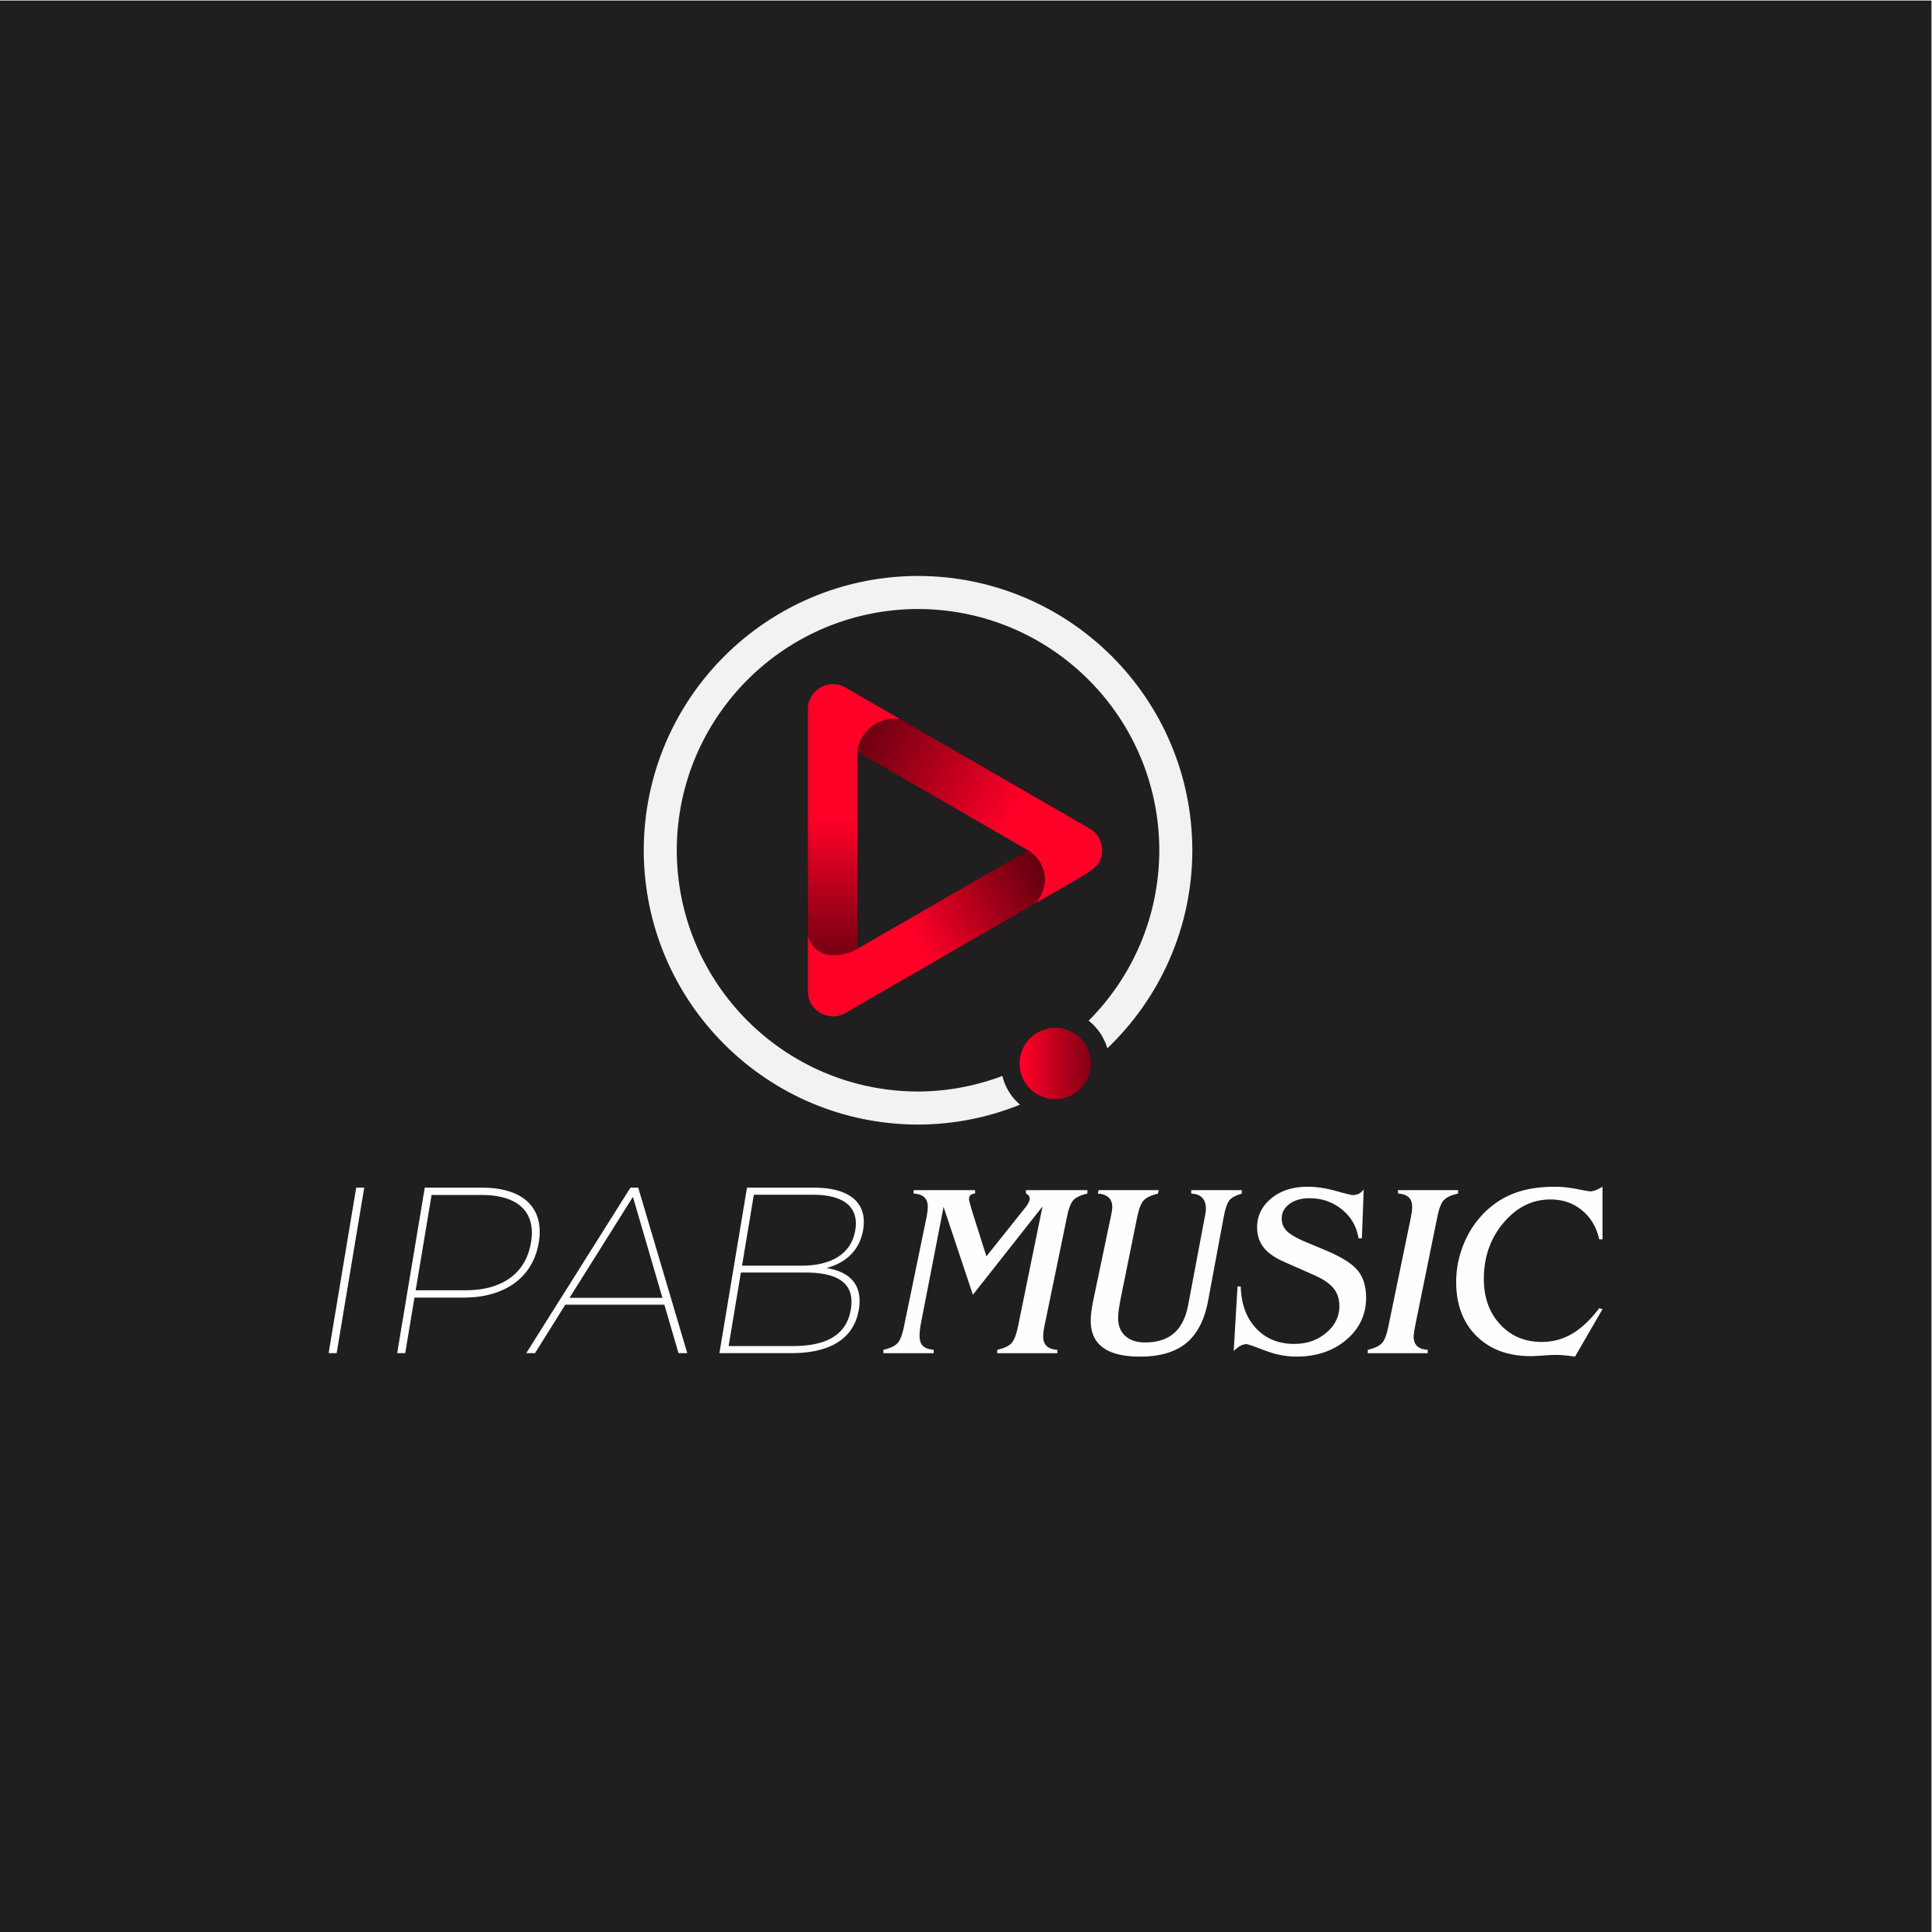 IPAB MUSIC